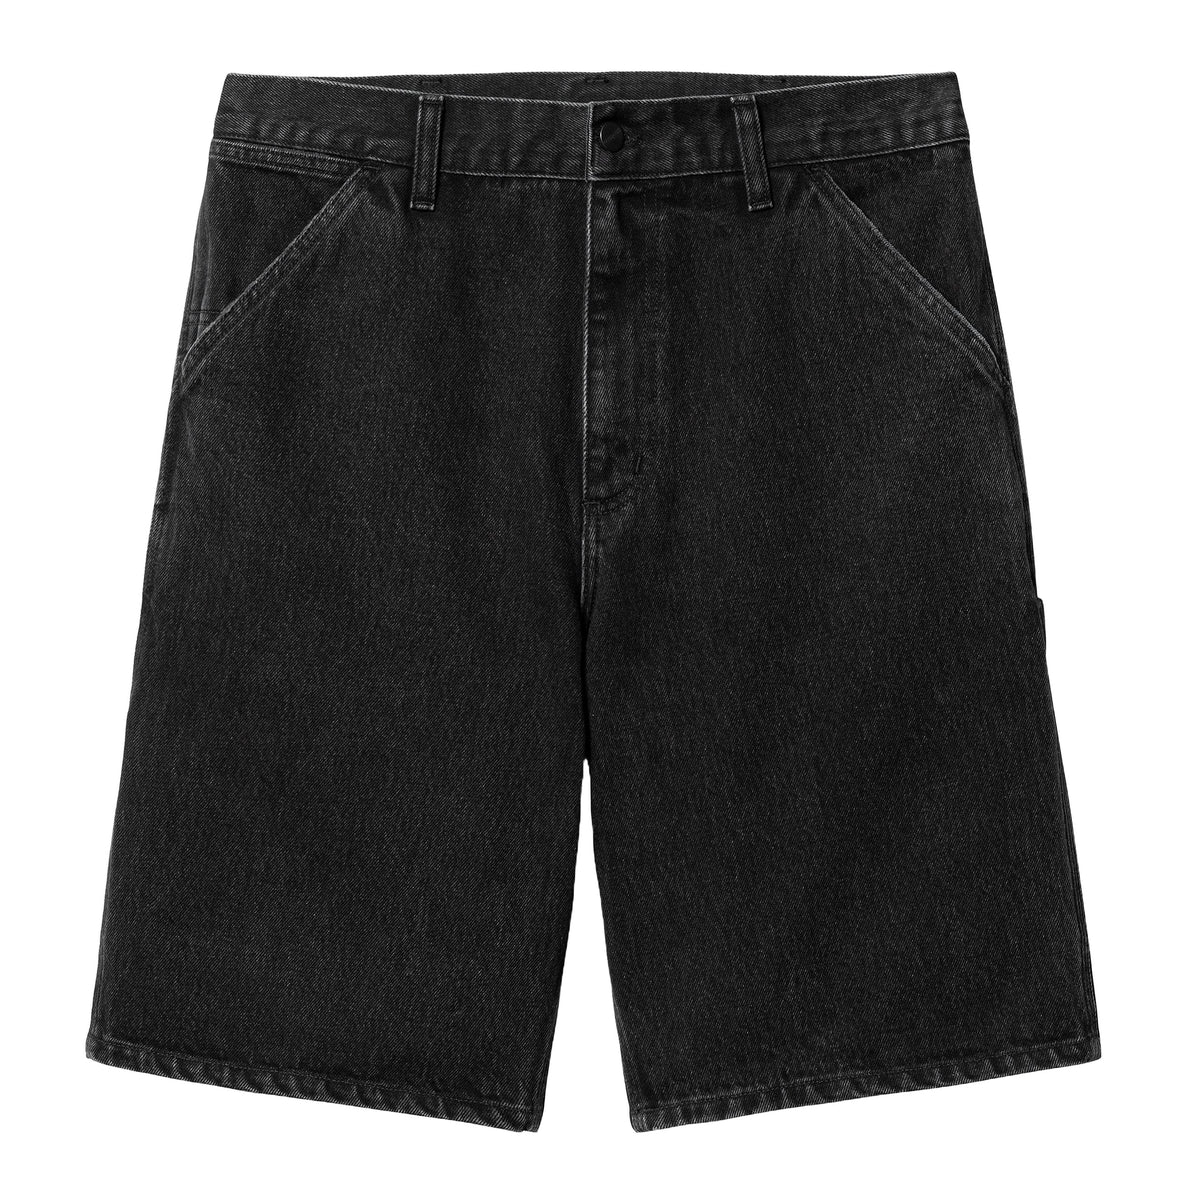 Carhartt Wip Pantaloncino jeans Uomo Single Knee Nero